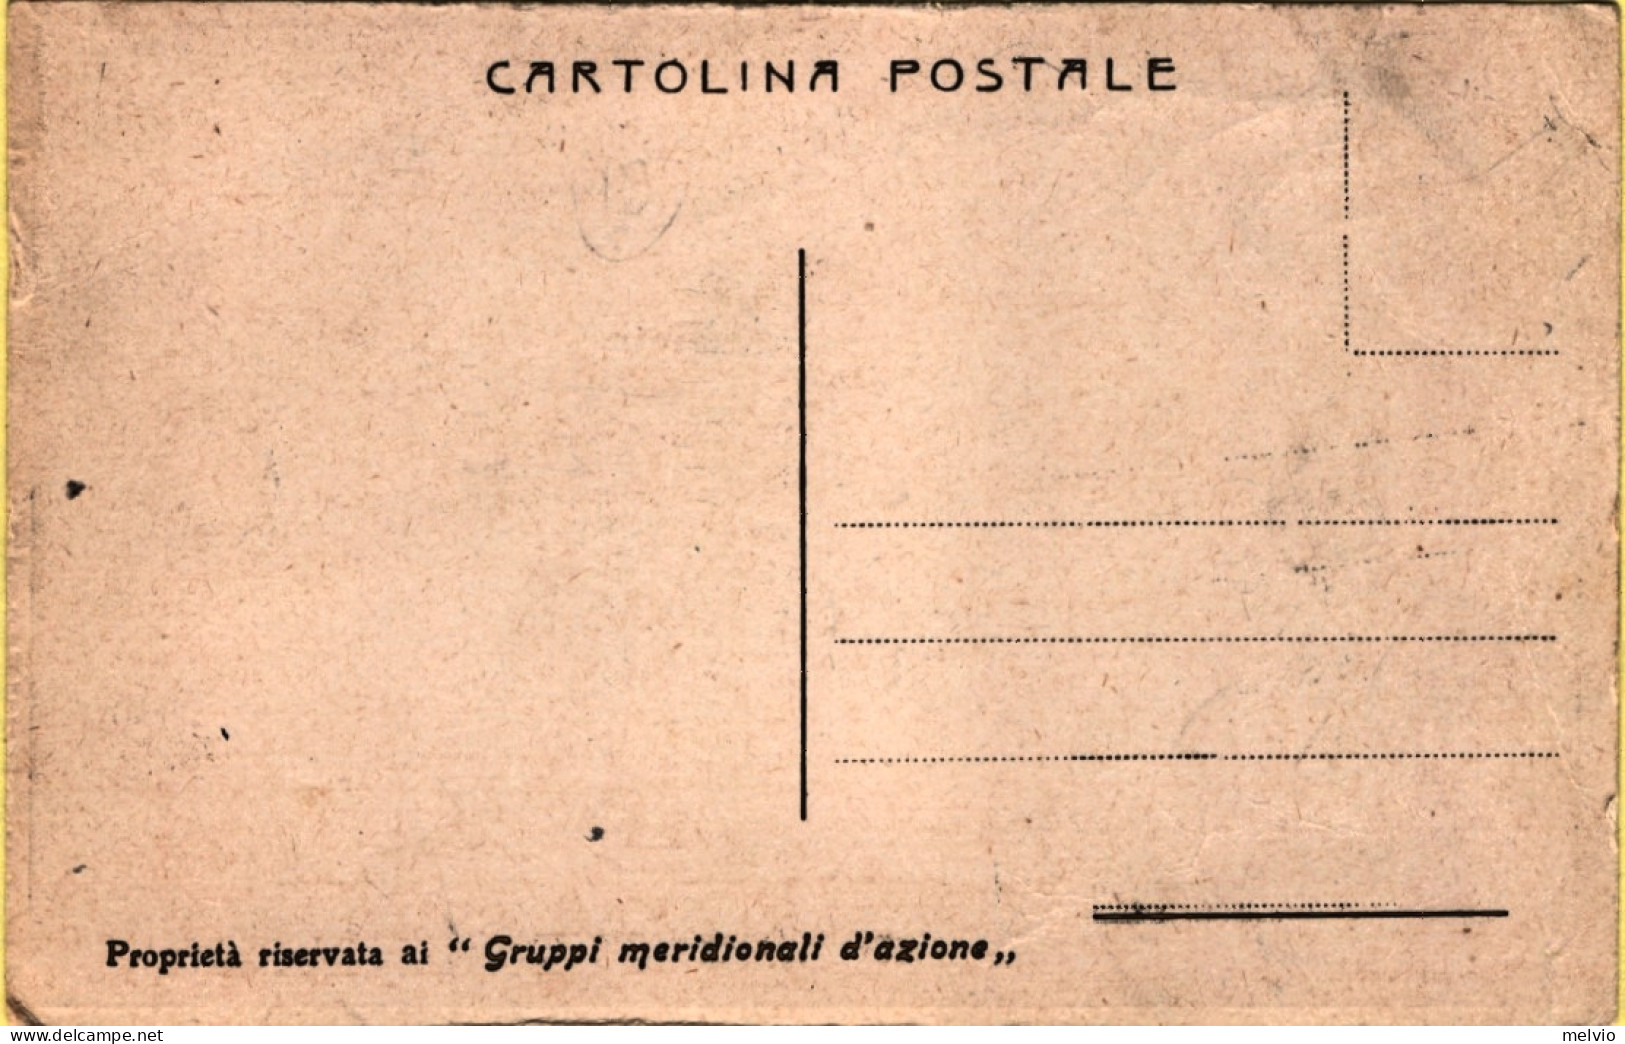 1950circa-Dazi Doganali Protettivi, Redenzione Cartolina A Cura Dei Gruppi Merid - Advertising